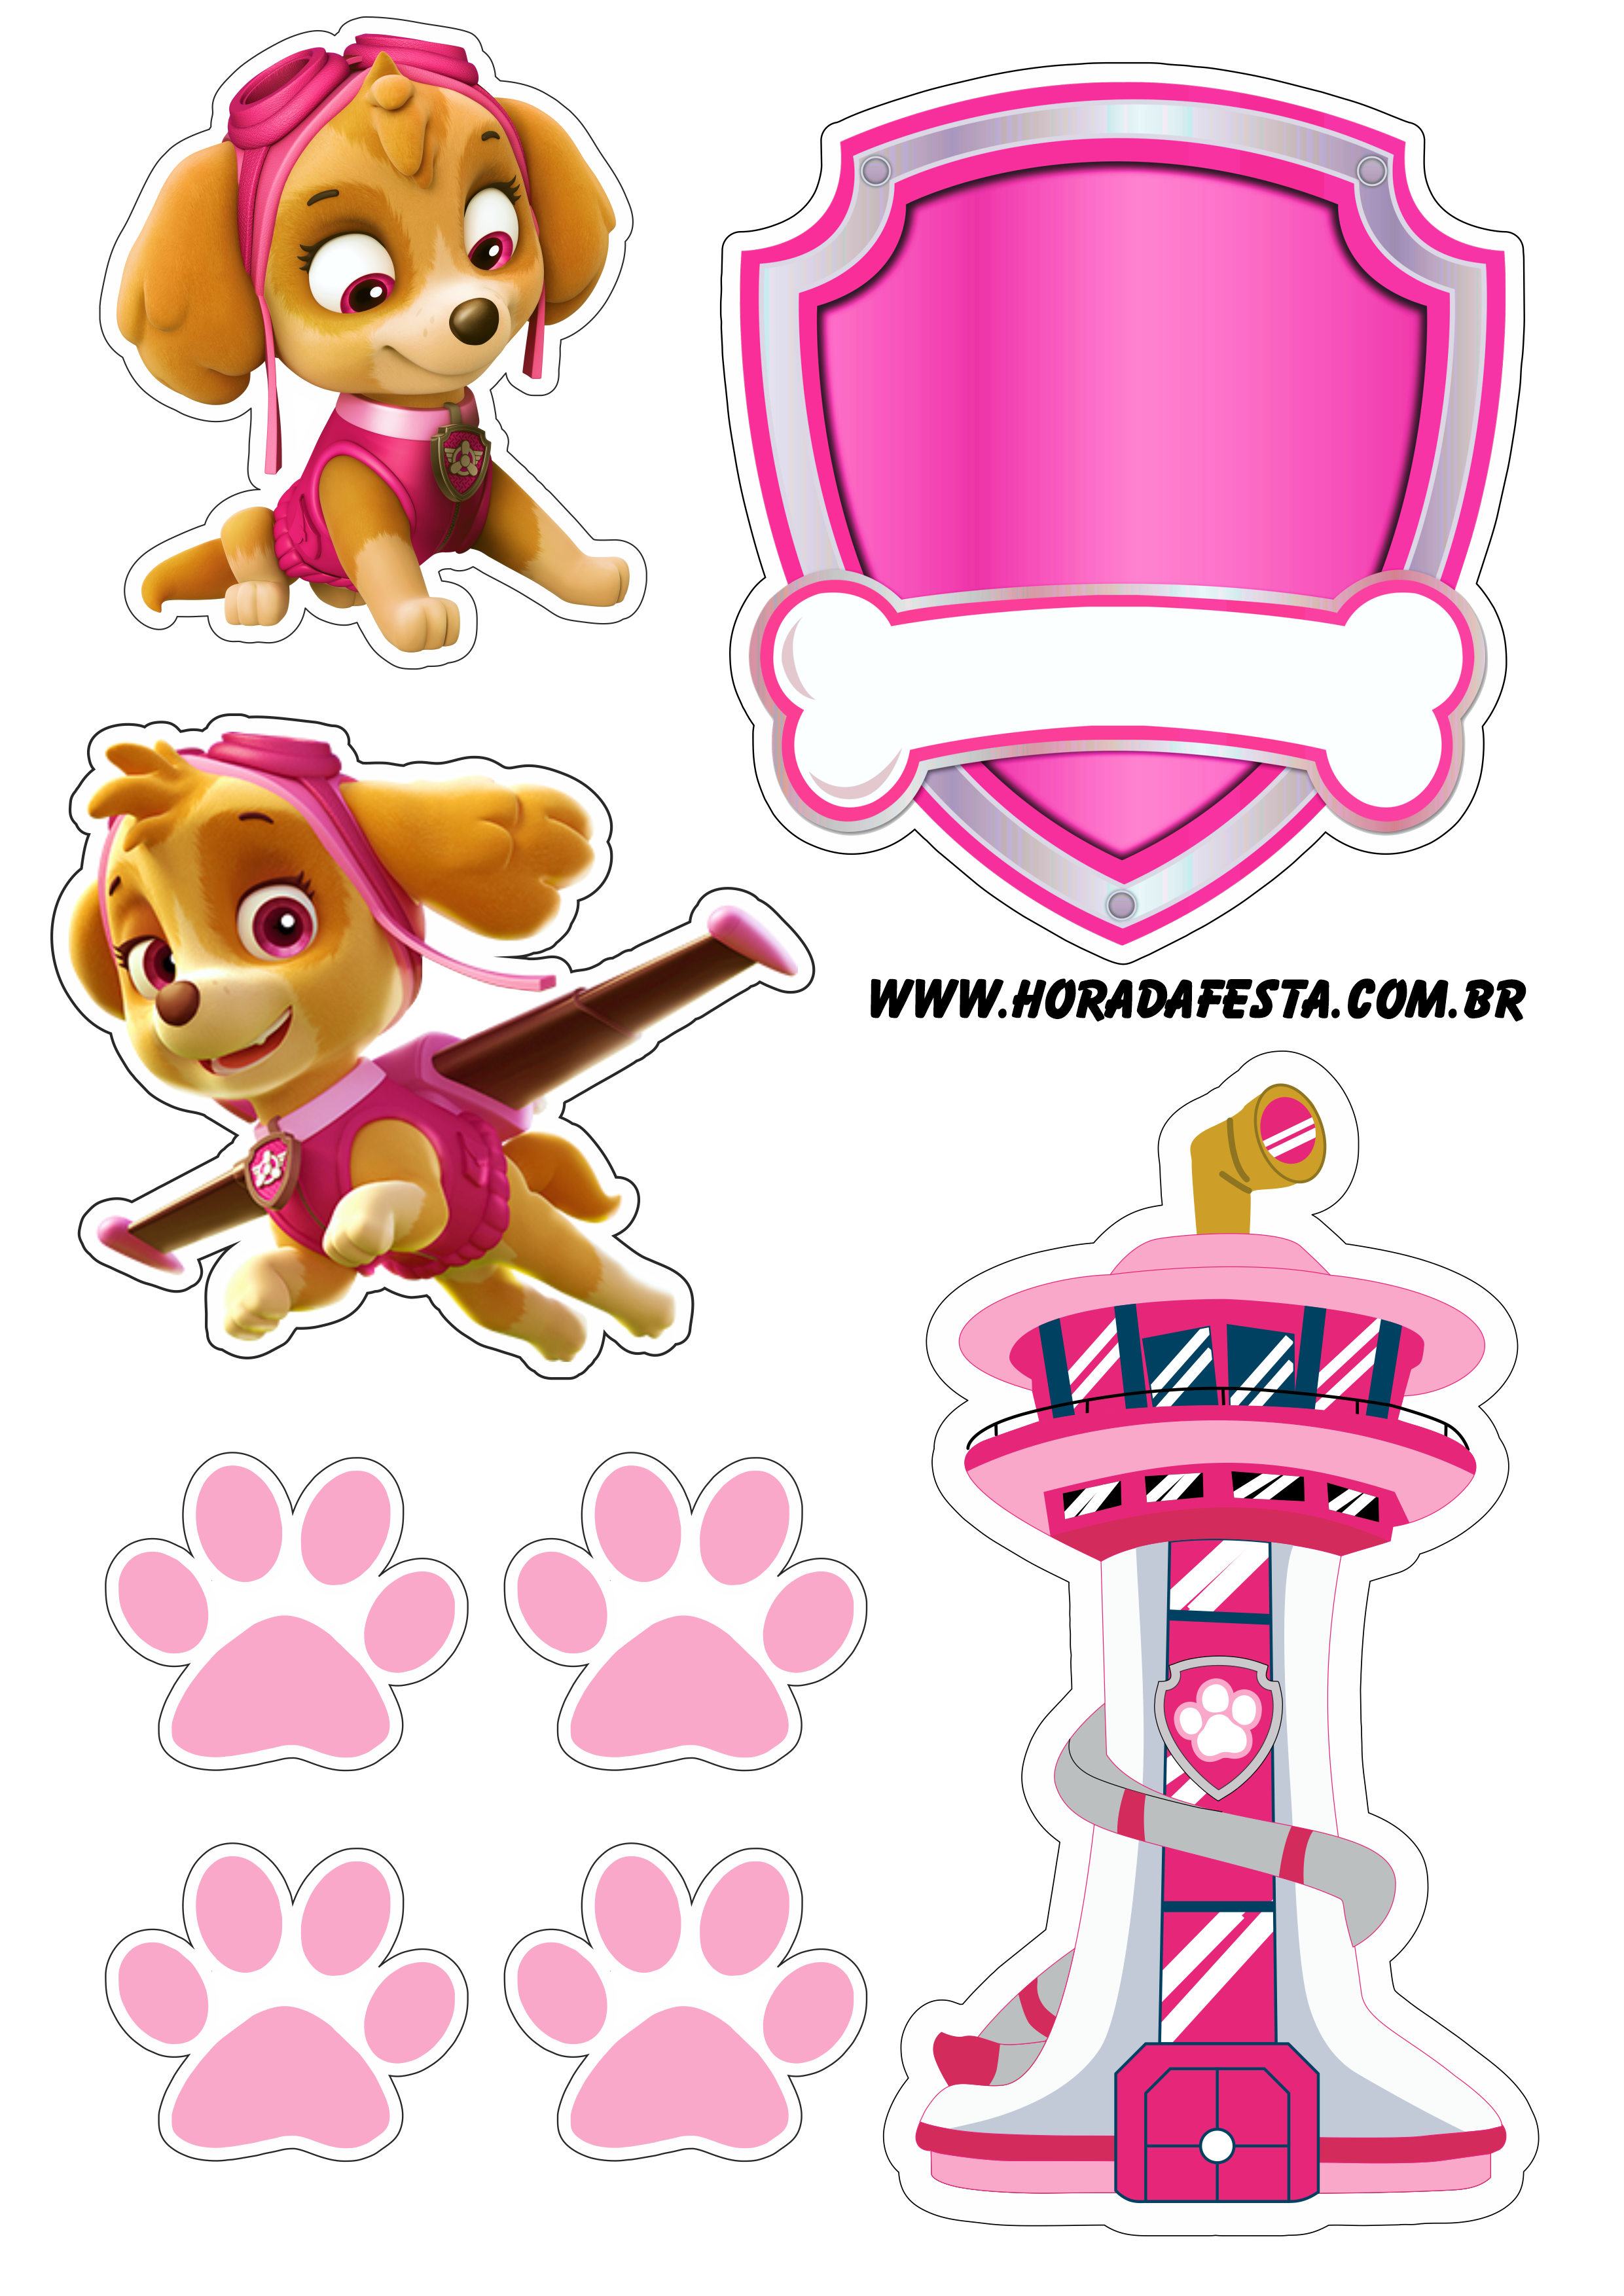 Patrulha canina paw patrol Skye topo de bolo decoração de aniversário infantil rosa festa personalizada png